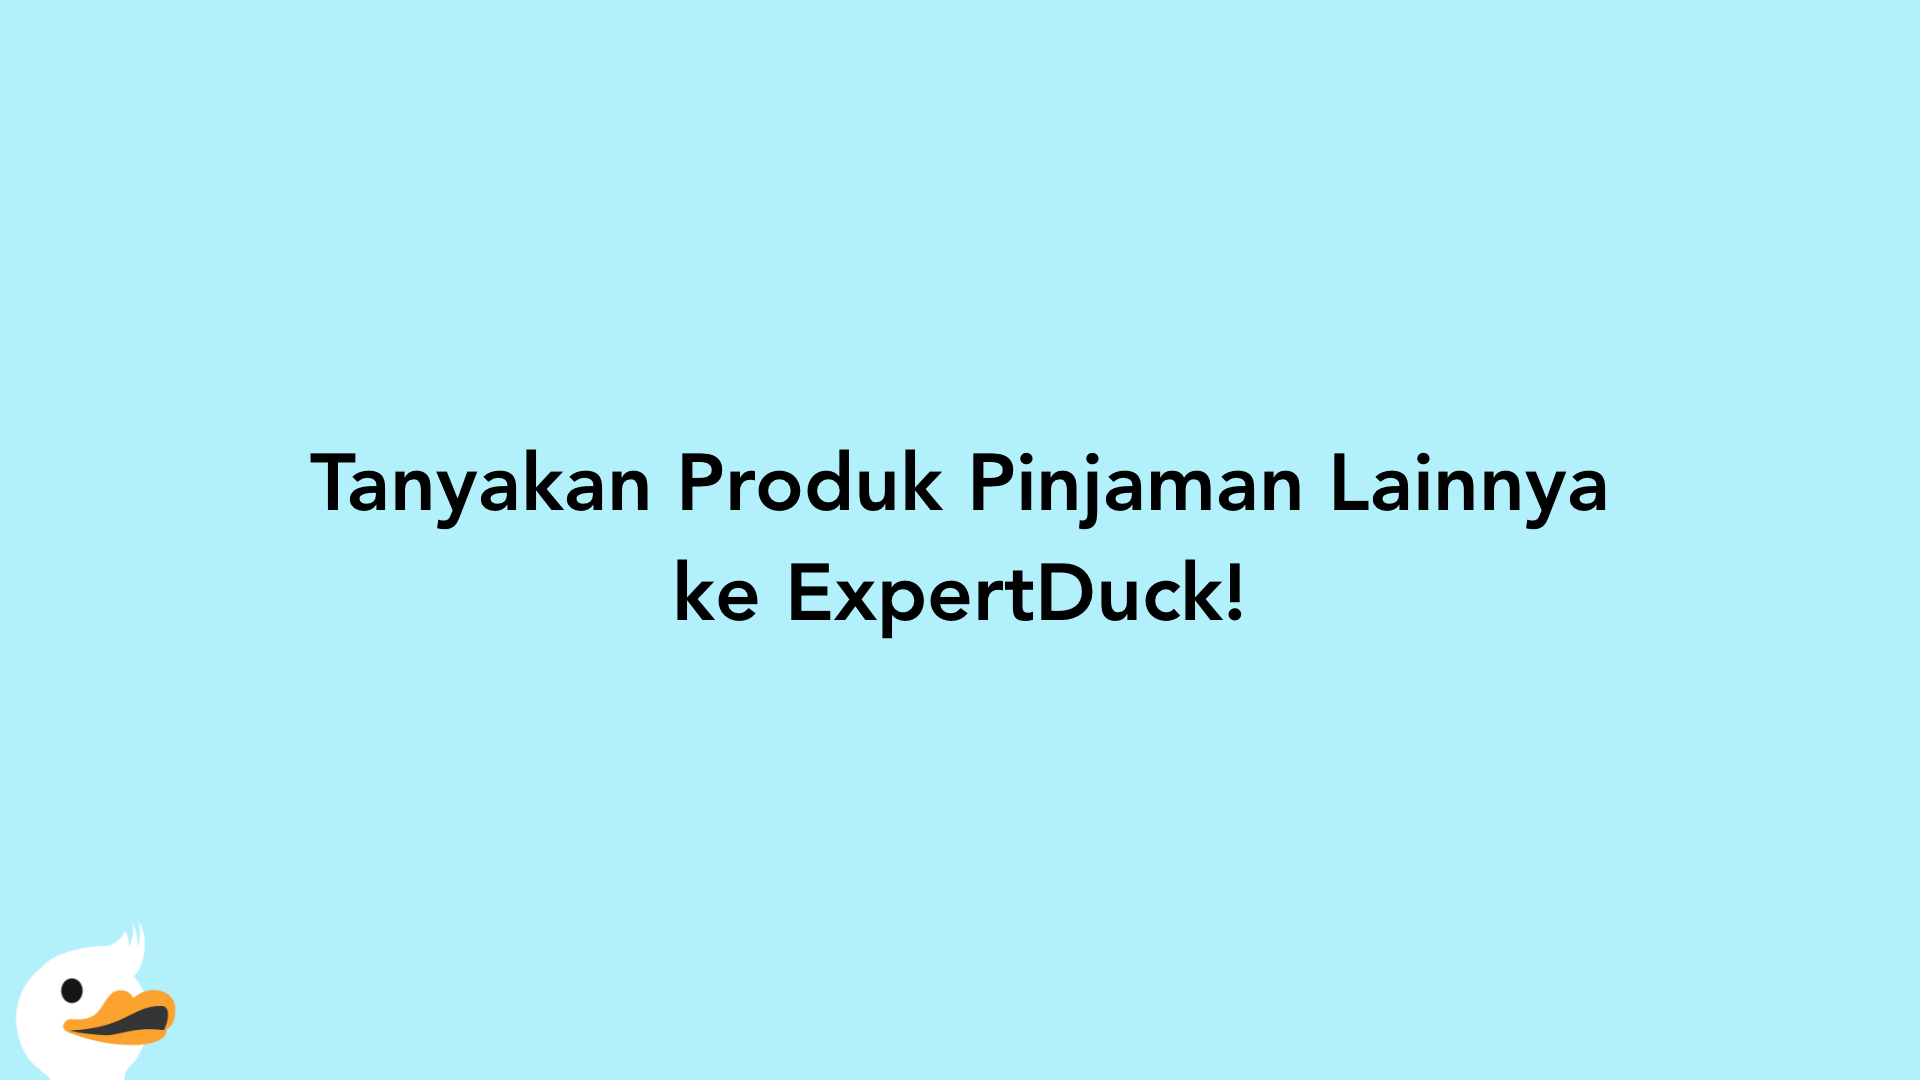 Tanyakan Produk Pinjaman Lainnya ke ExpertDuck!